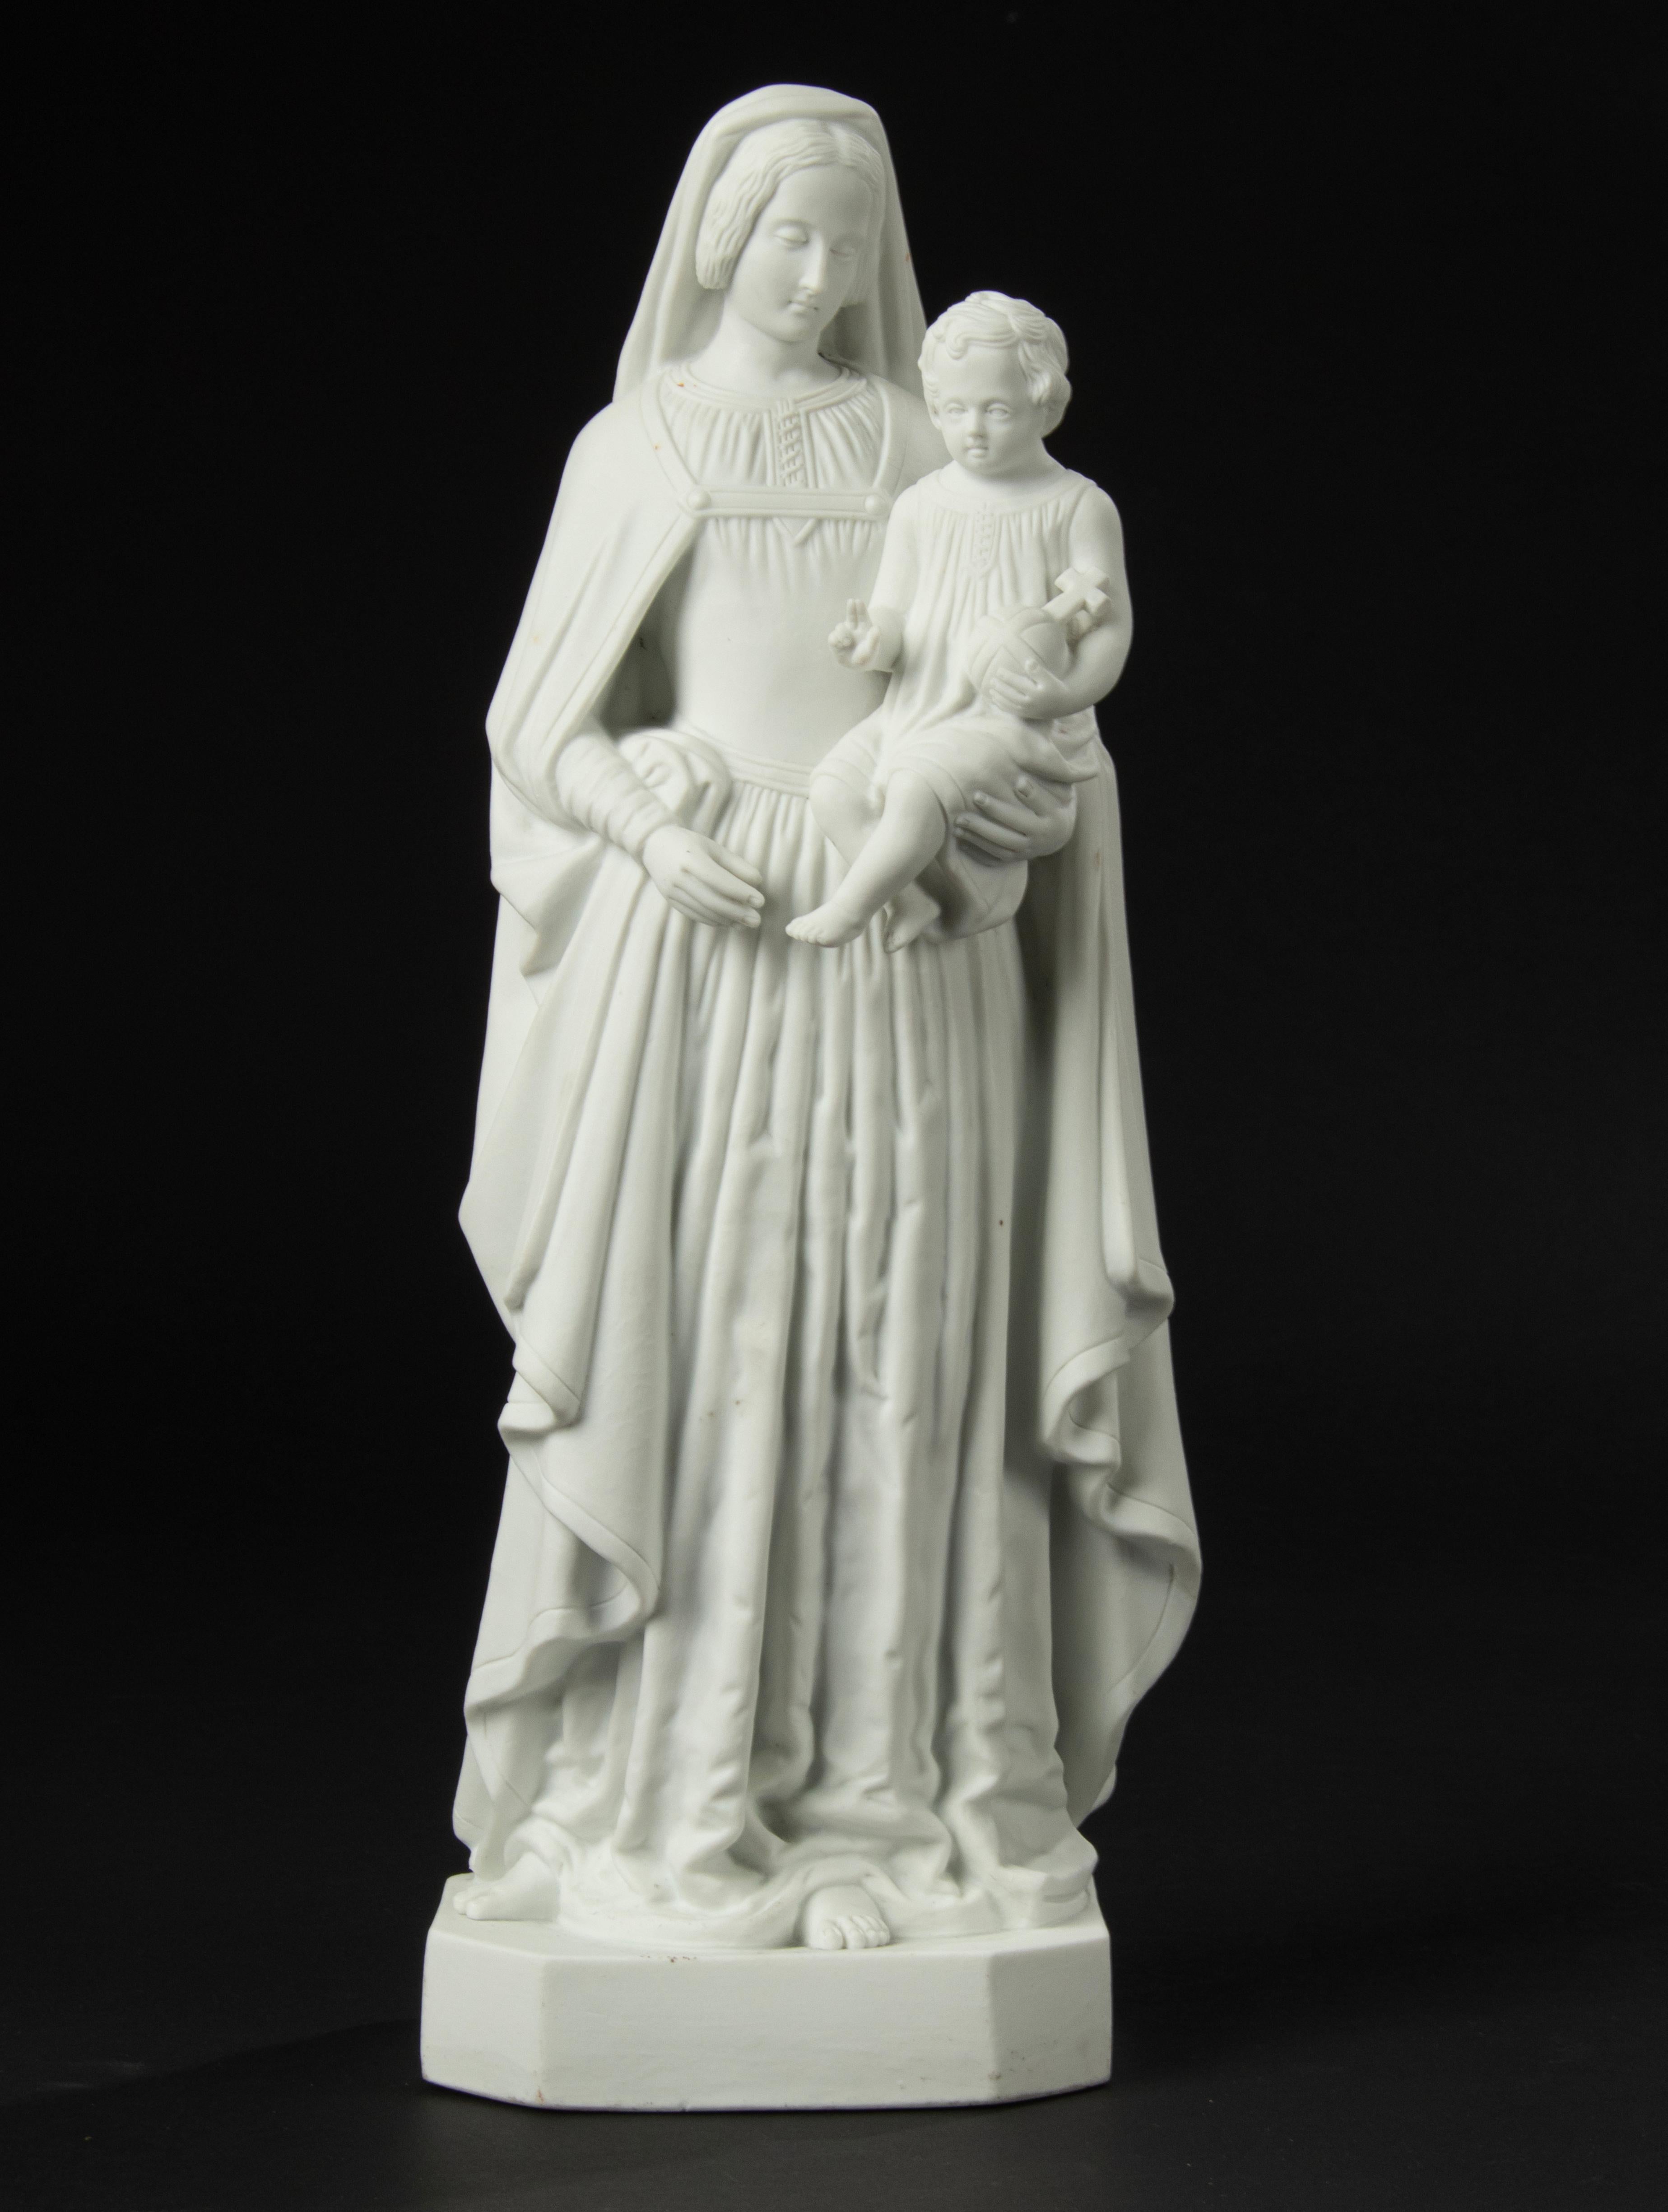 Belle sculpture en biscuit de porcelaine, représentant Marie avec l'enfant Jésus sur son bras.
La sculpture est marquée sur le fond, mais le signe n'est pas clair. Fabricant inconnu.
La statue est en très bon état. Livraison gratuite.